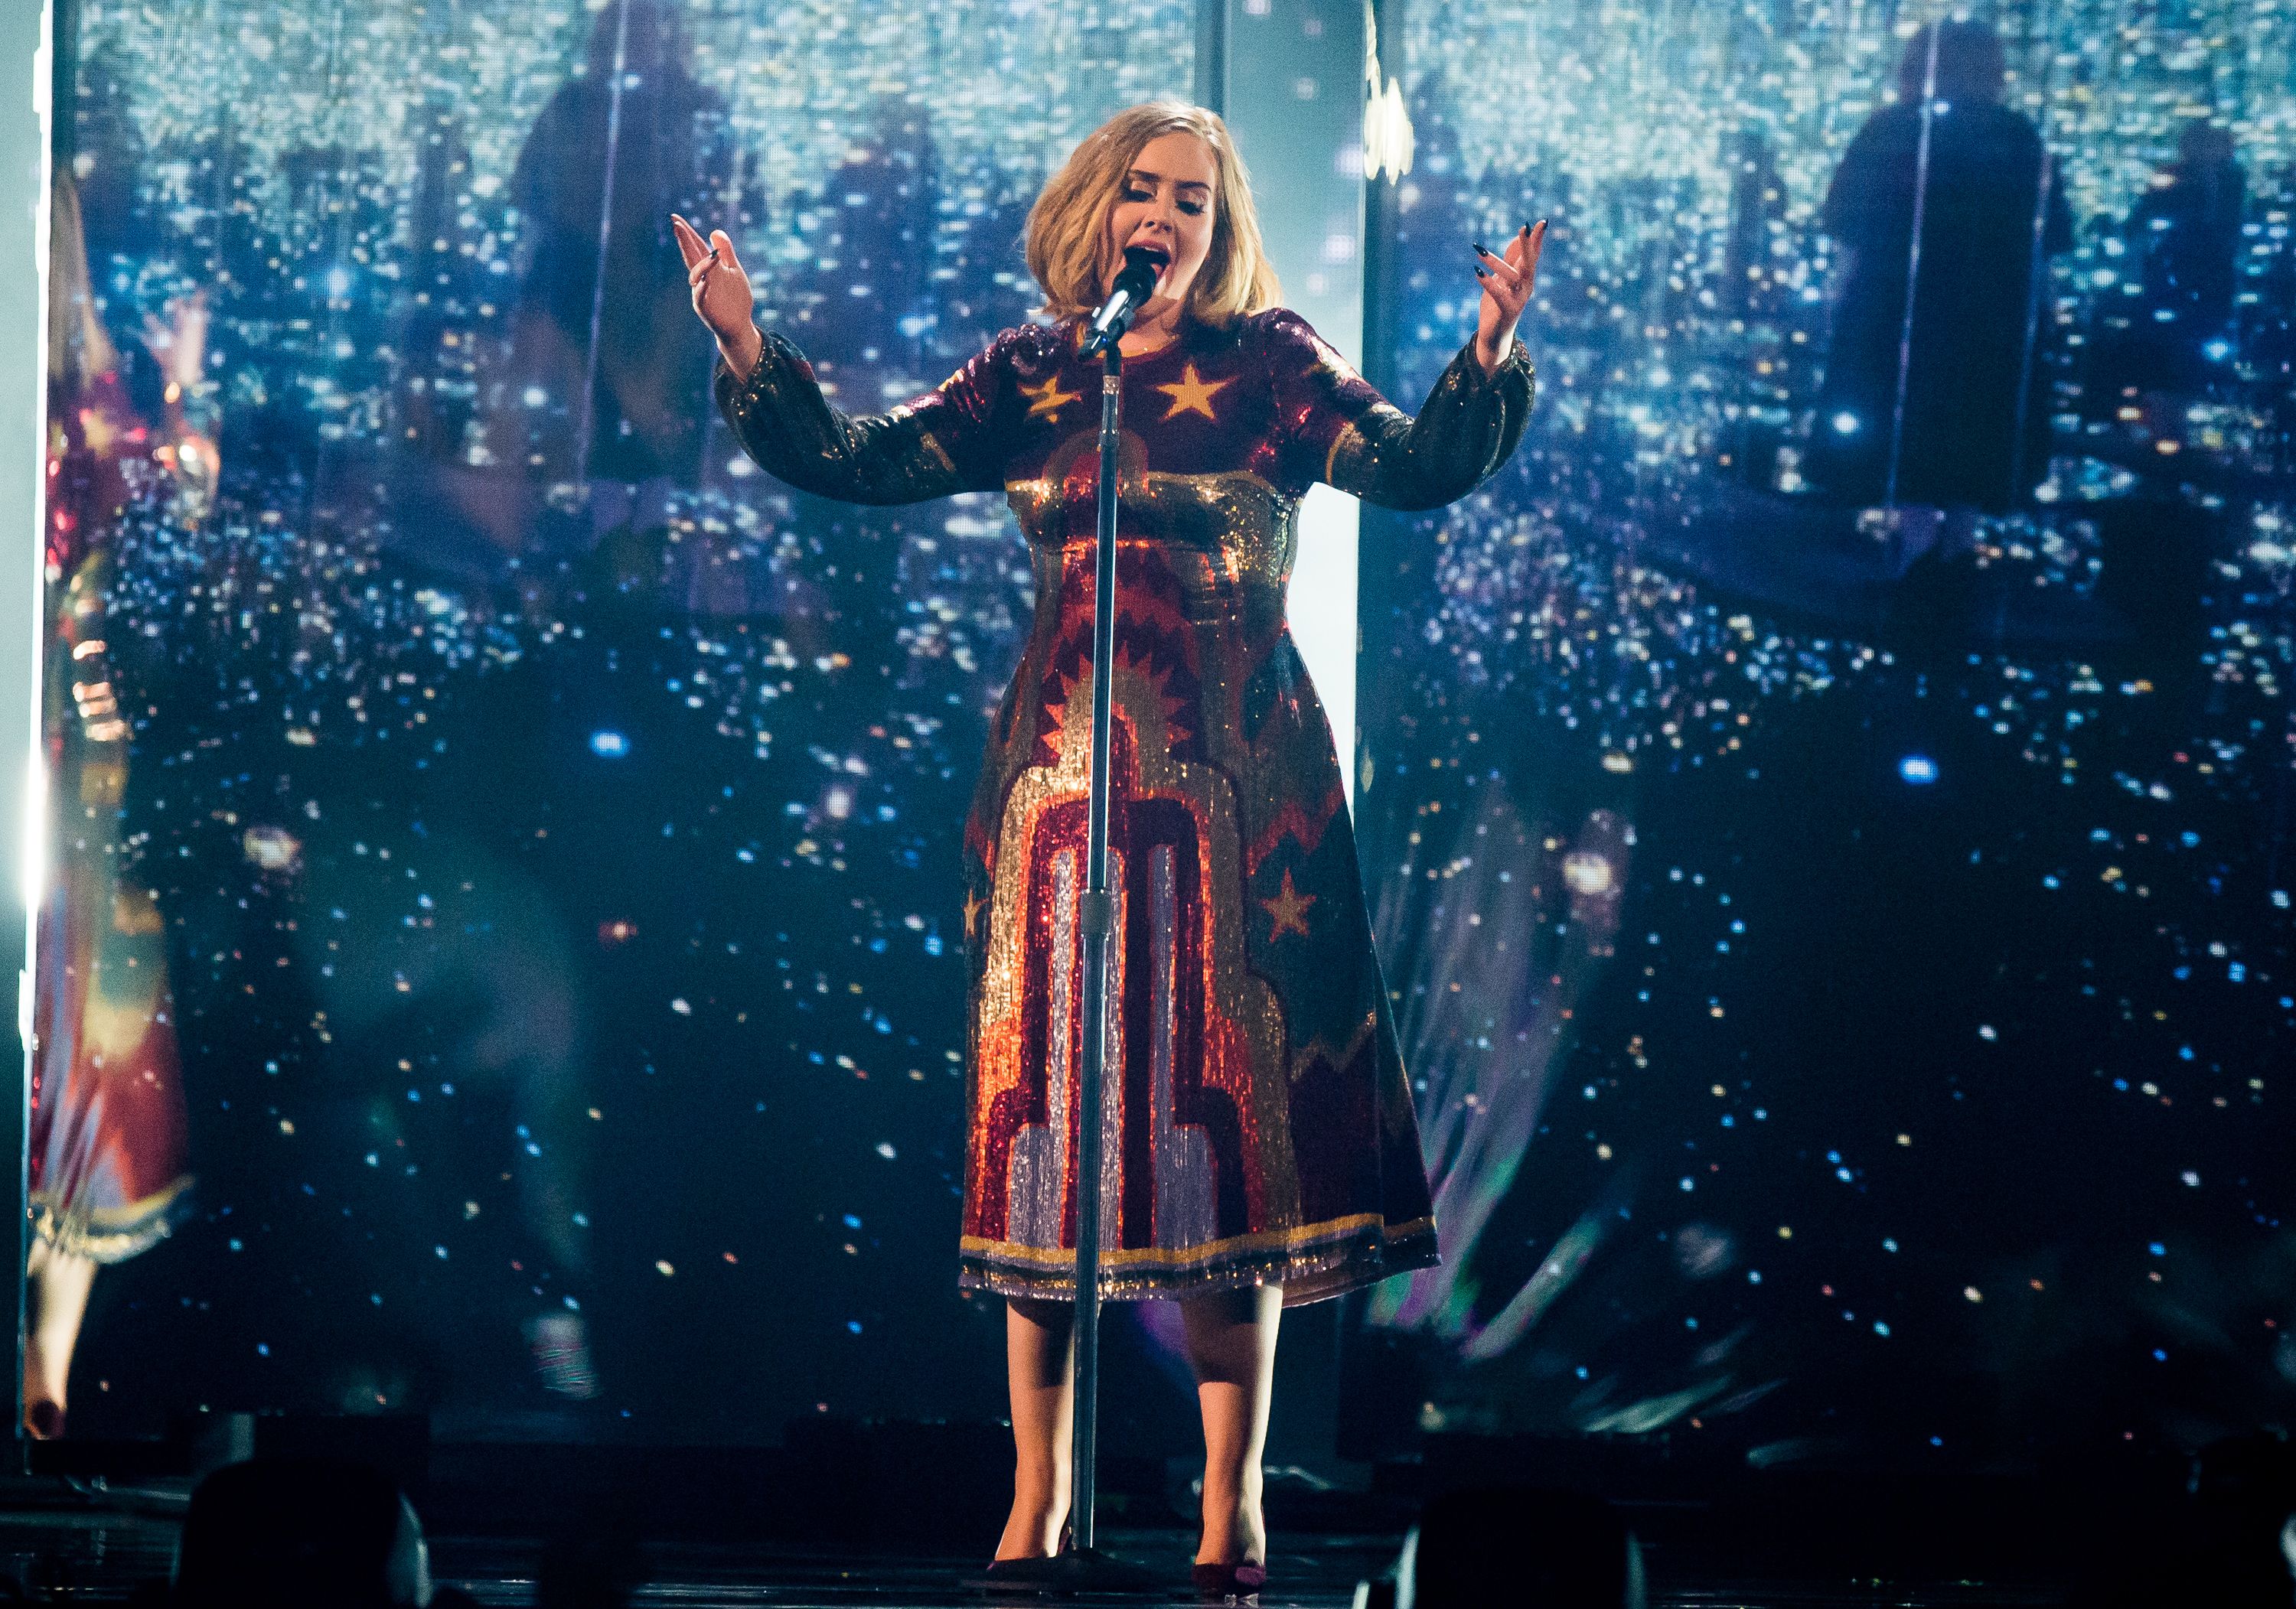 Adele Belfast Tour Stop - Adele Kicks Off World Tour